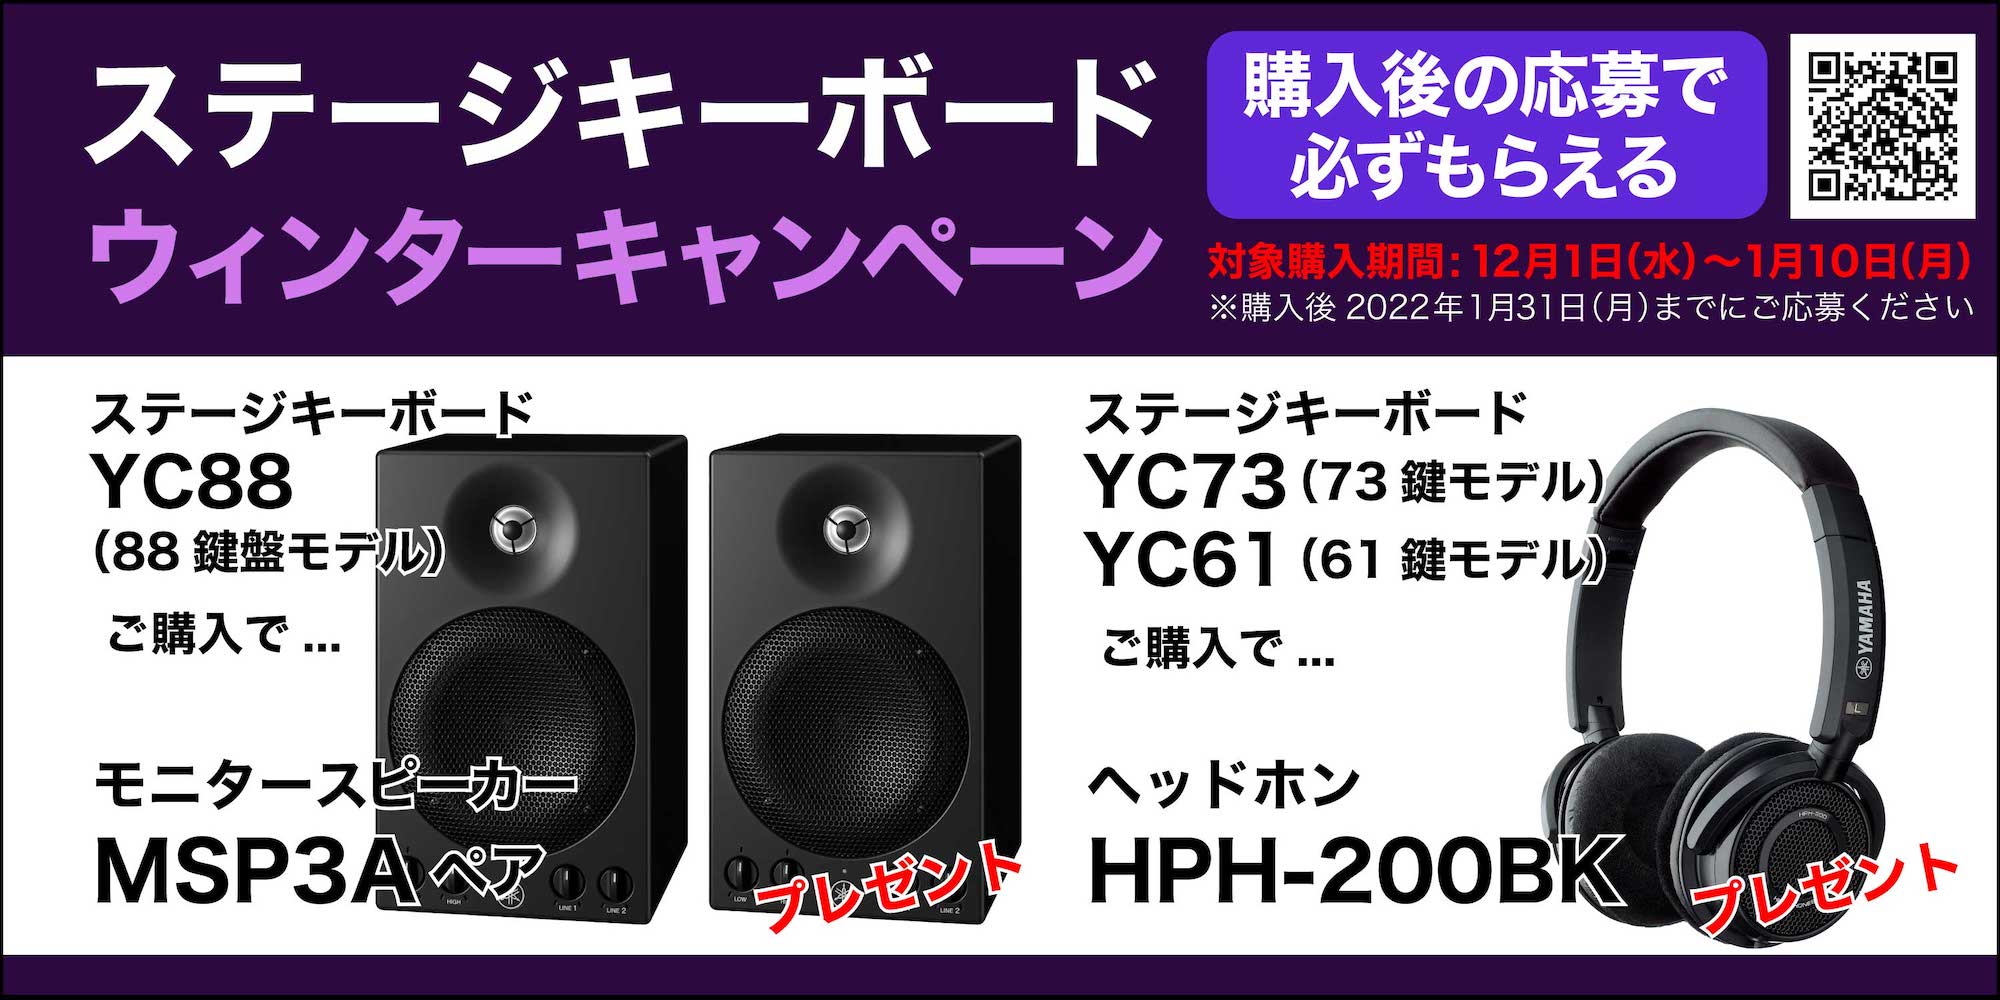 *【展示店限定特典あり！】YCシリーズご購入でモニタースピーカーやヘッドホンをプレゼント！ YAMAHA ( ヤマハ )が、キャンペーン期間中、ステージキーボードYCシリーズを購入・申込みでモニタースピーカー「MSP3A」ペア、ヘッドホン「HPH-200BK」などがもらえる「ステージキーボードウイン […]